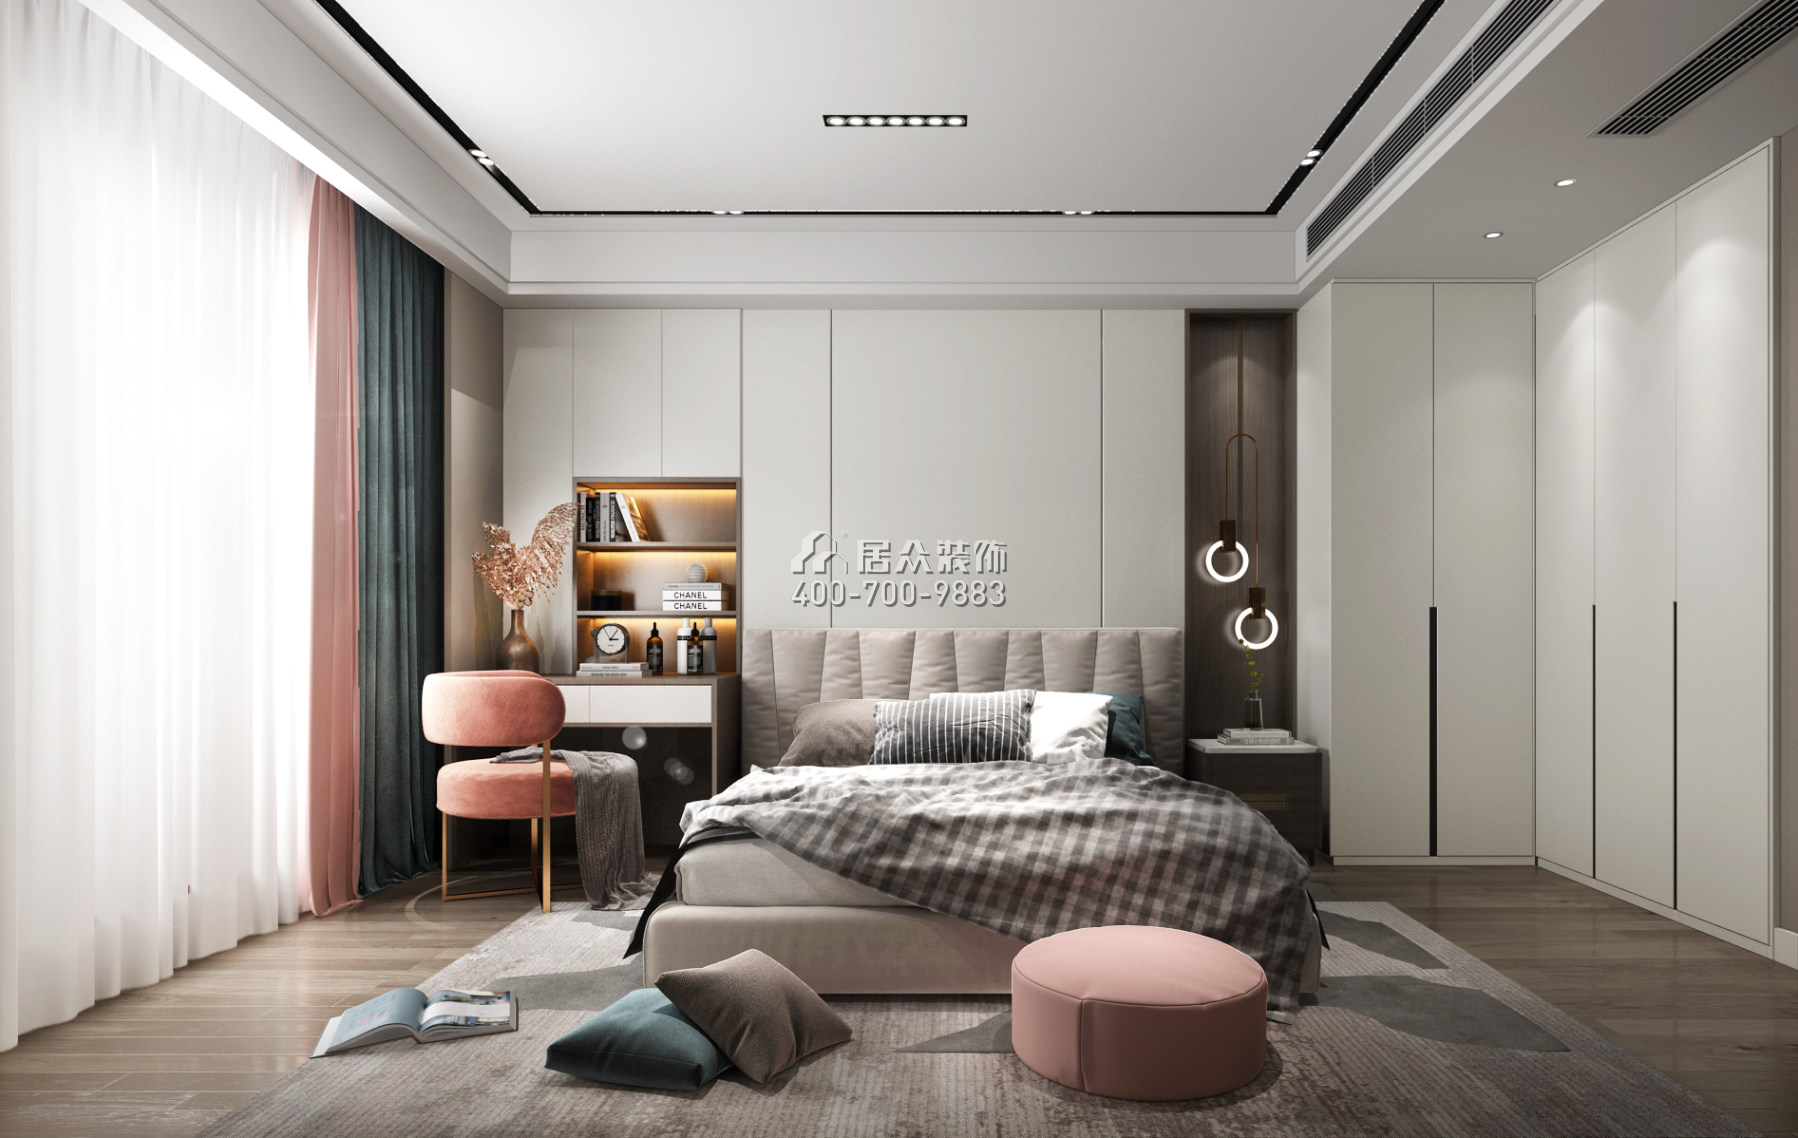 君華御庭189平方米現代簡約風格平層戶型臥室裝修效果圖